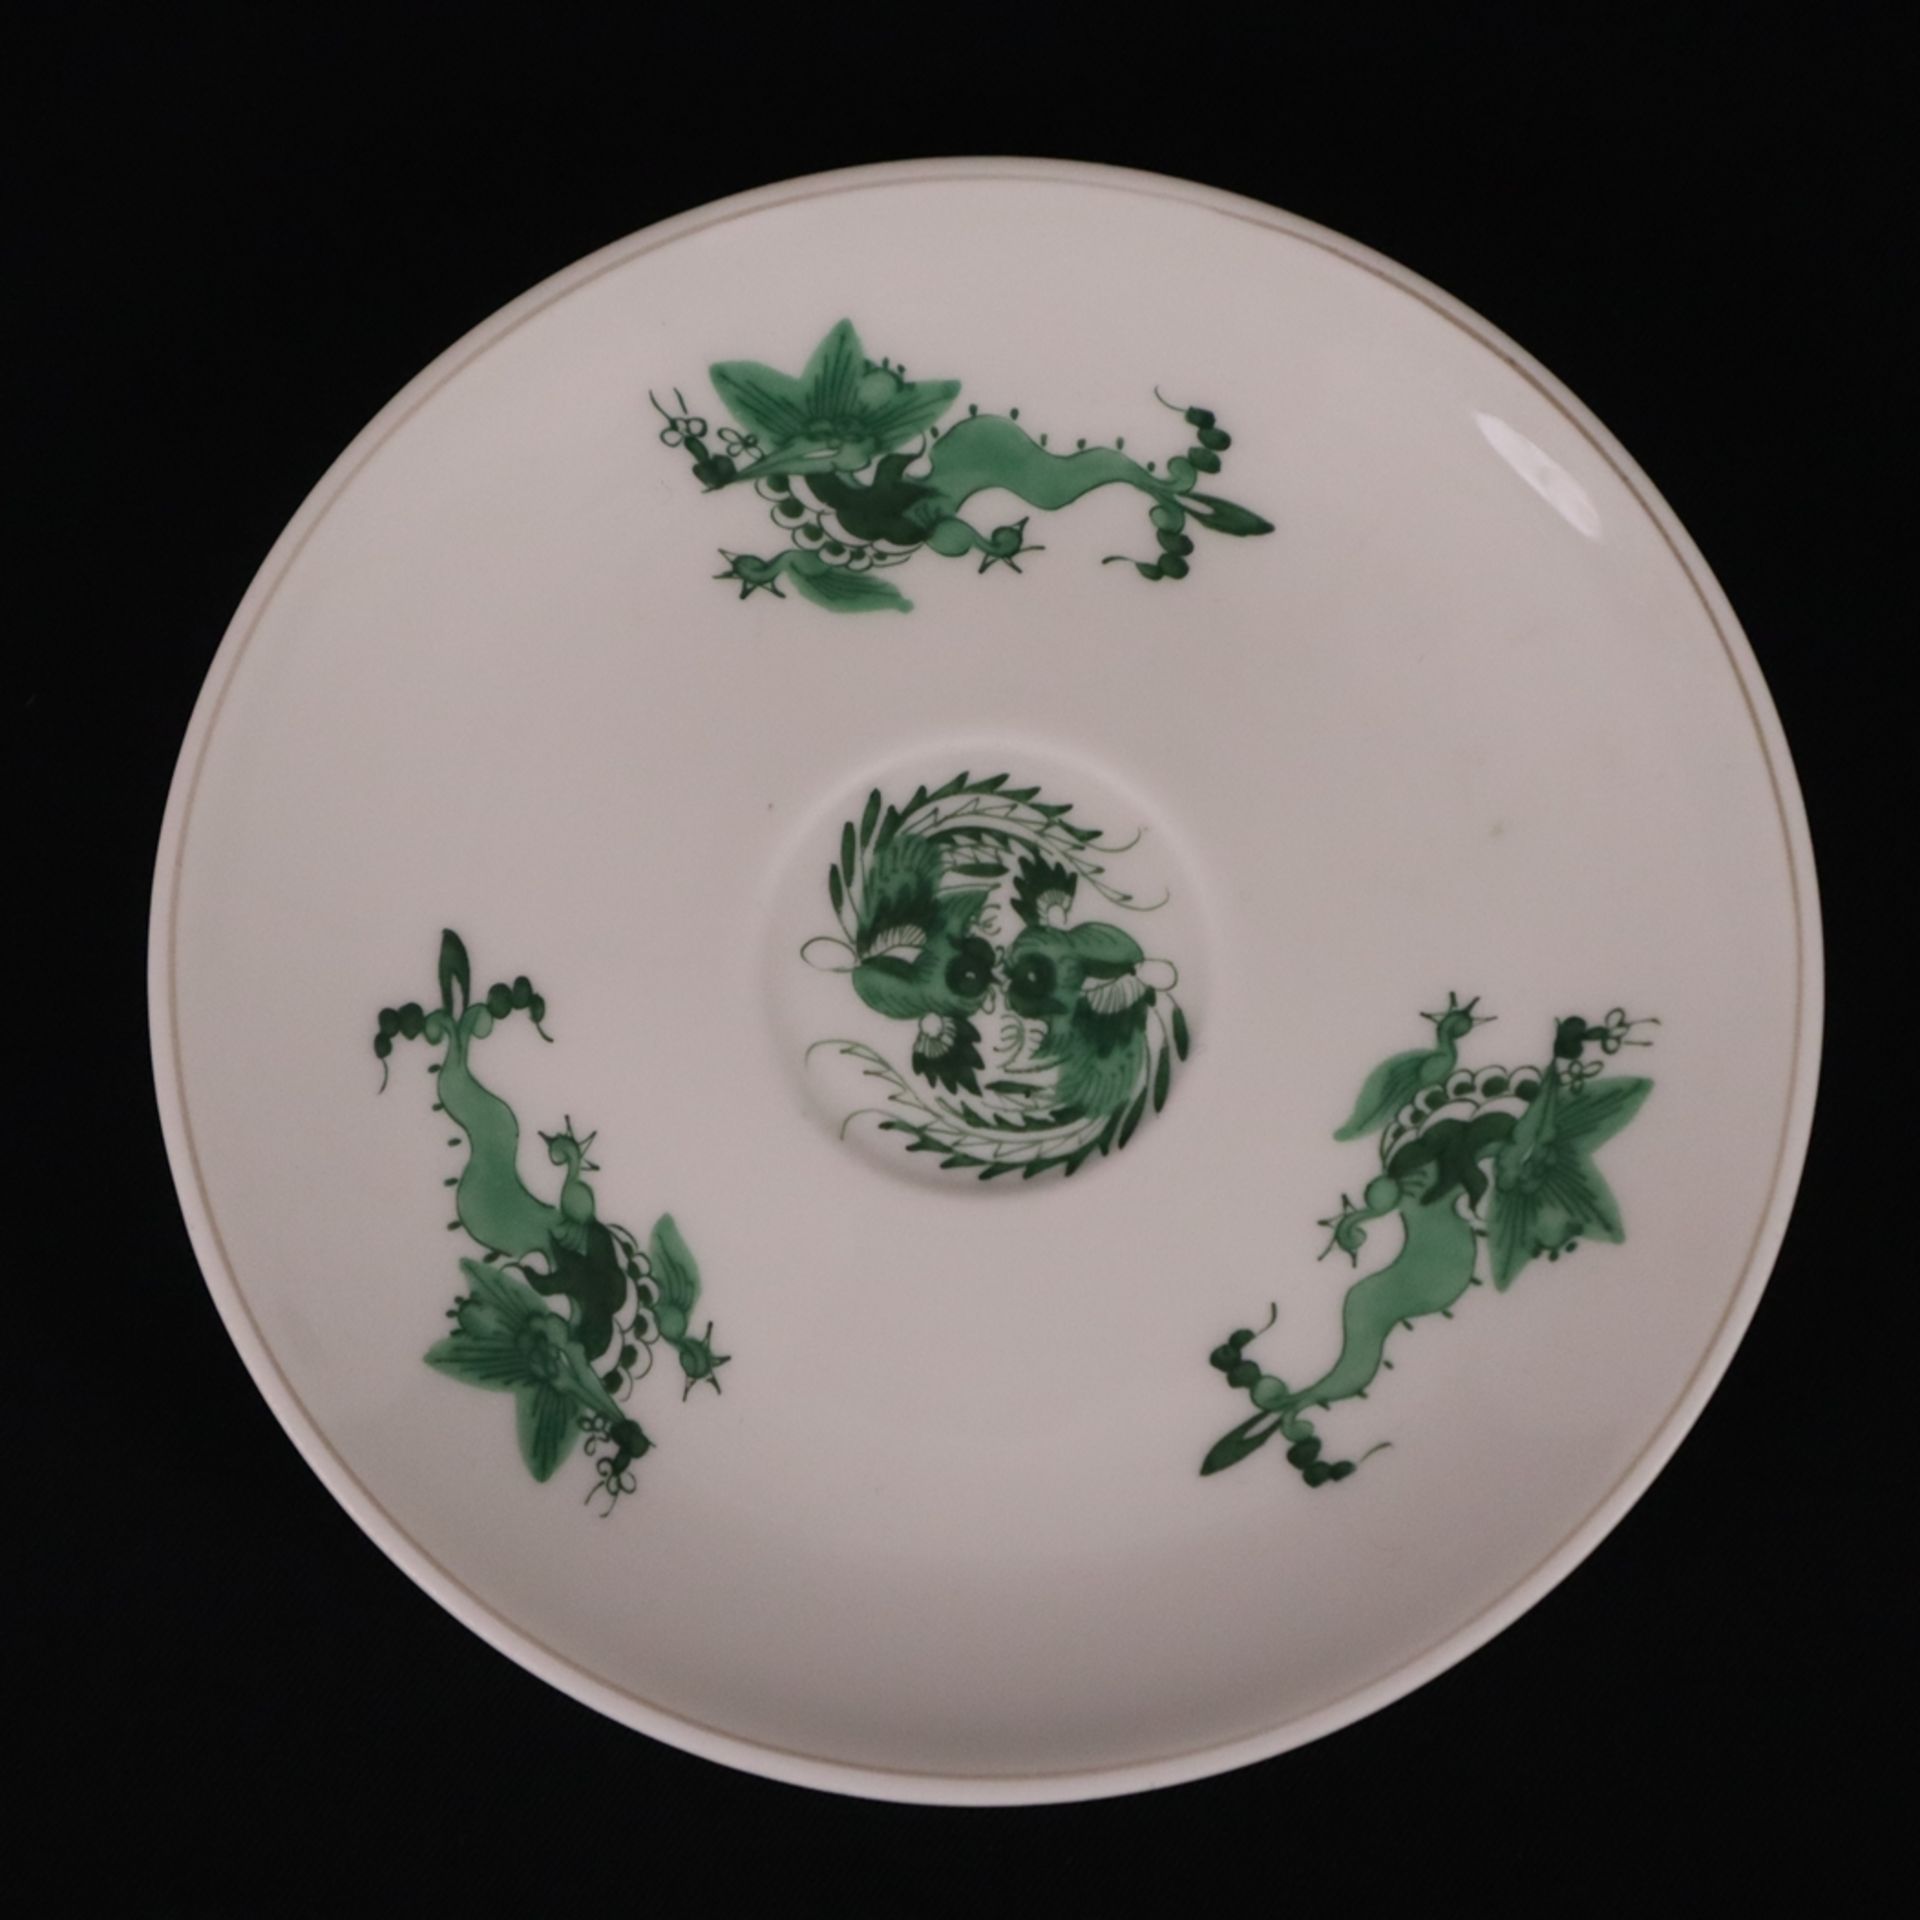 Mokkatasse mit Untertasse - Meissen, Porzellan, Dekor "Ming-Drache" in Grün und Grau, glatte Form m - Bild 4 aus 6